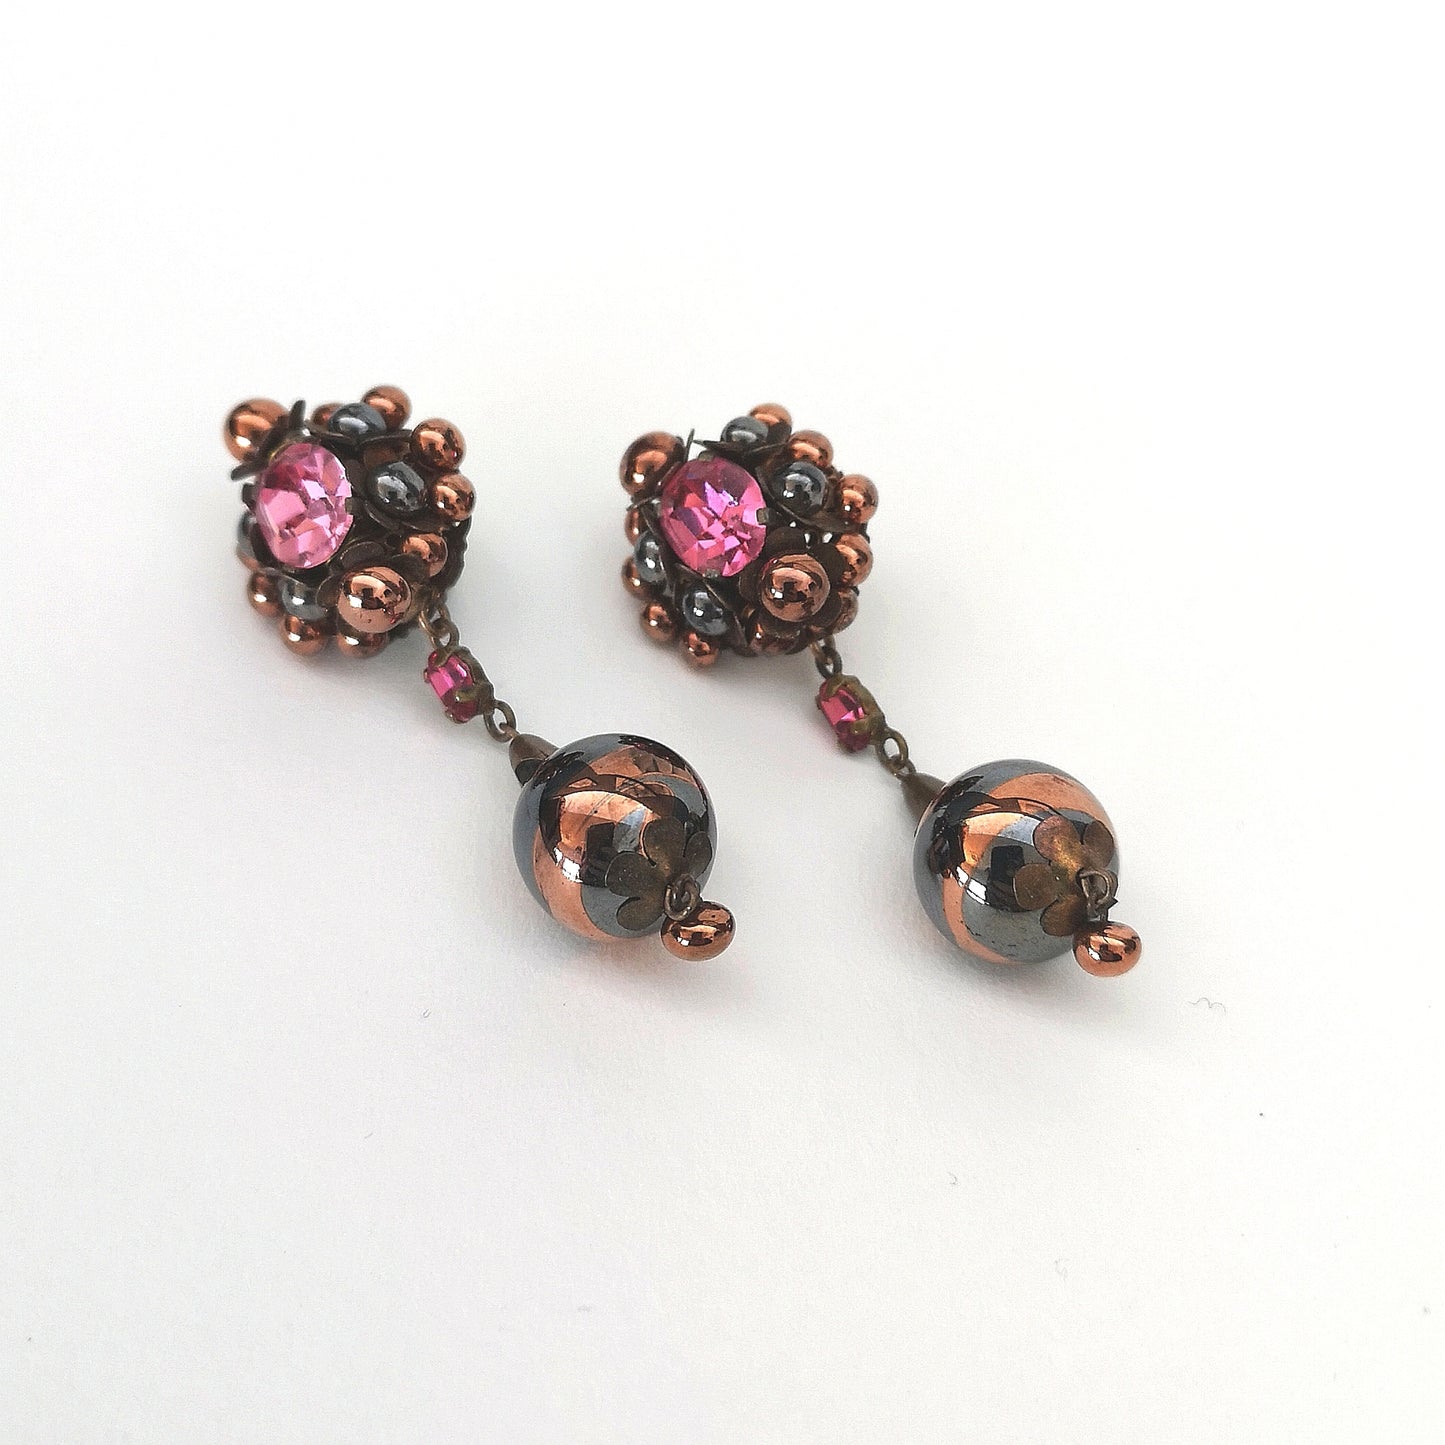 Vintage 50' glass beads and rhinstones earrings